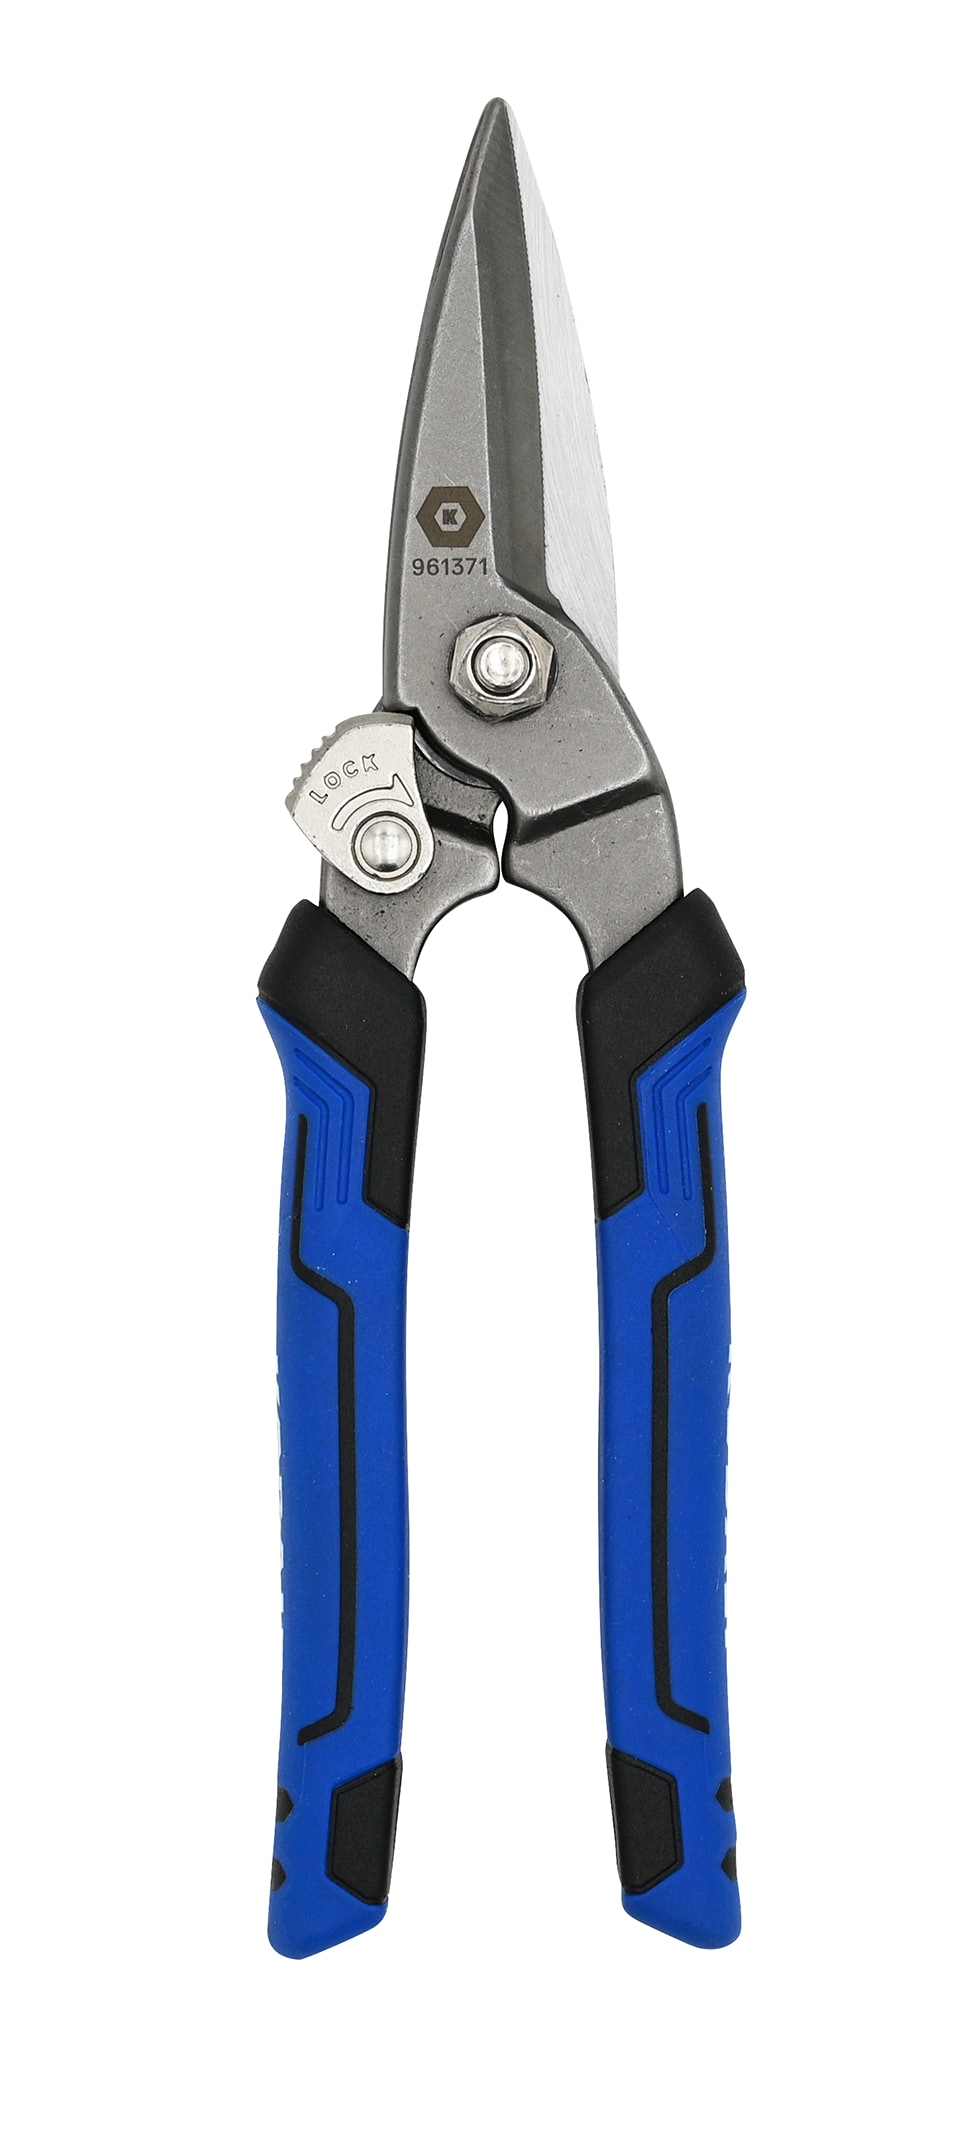 Cutco Heavy Duty Scissors For $35 ($140 Value) for Sale in Bellevue, WA -  OfferUp